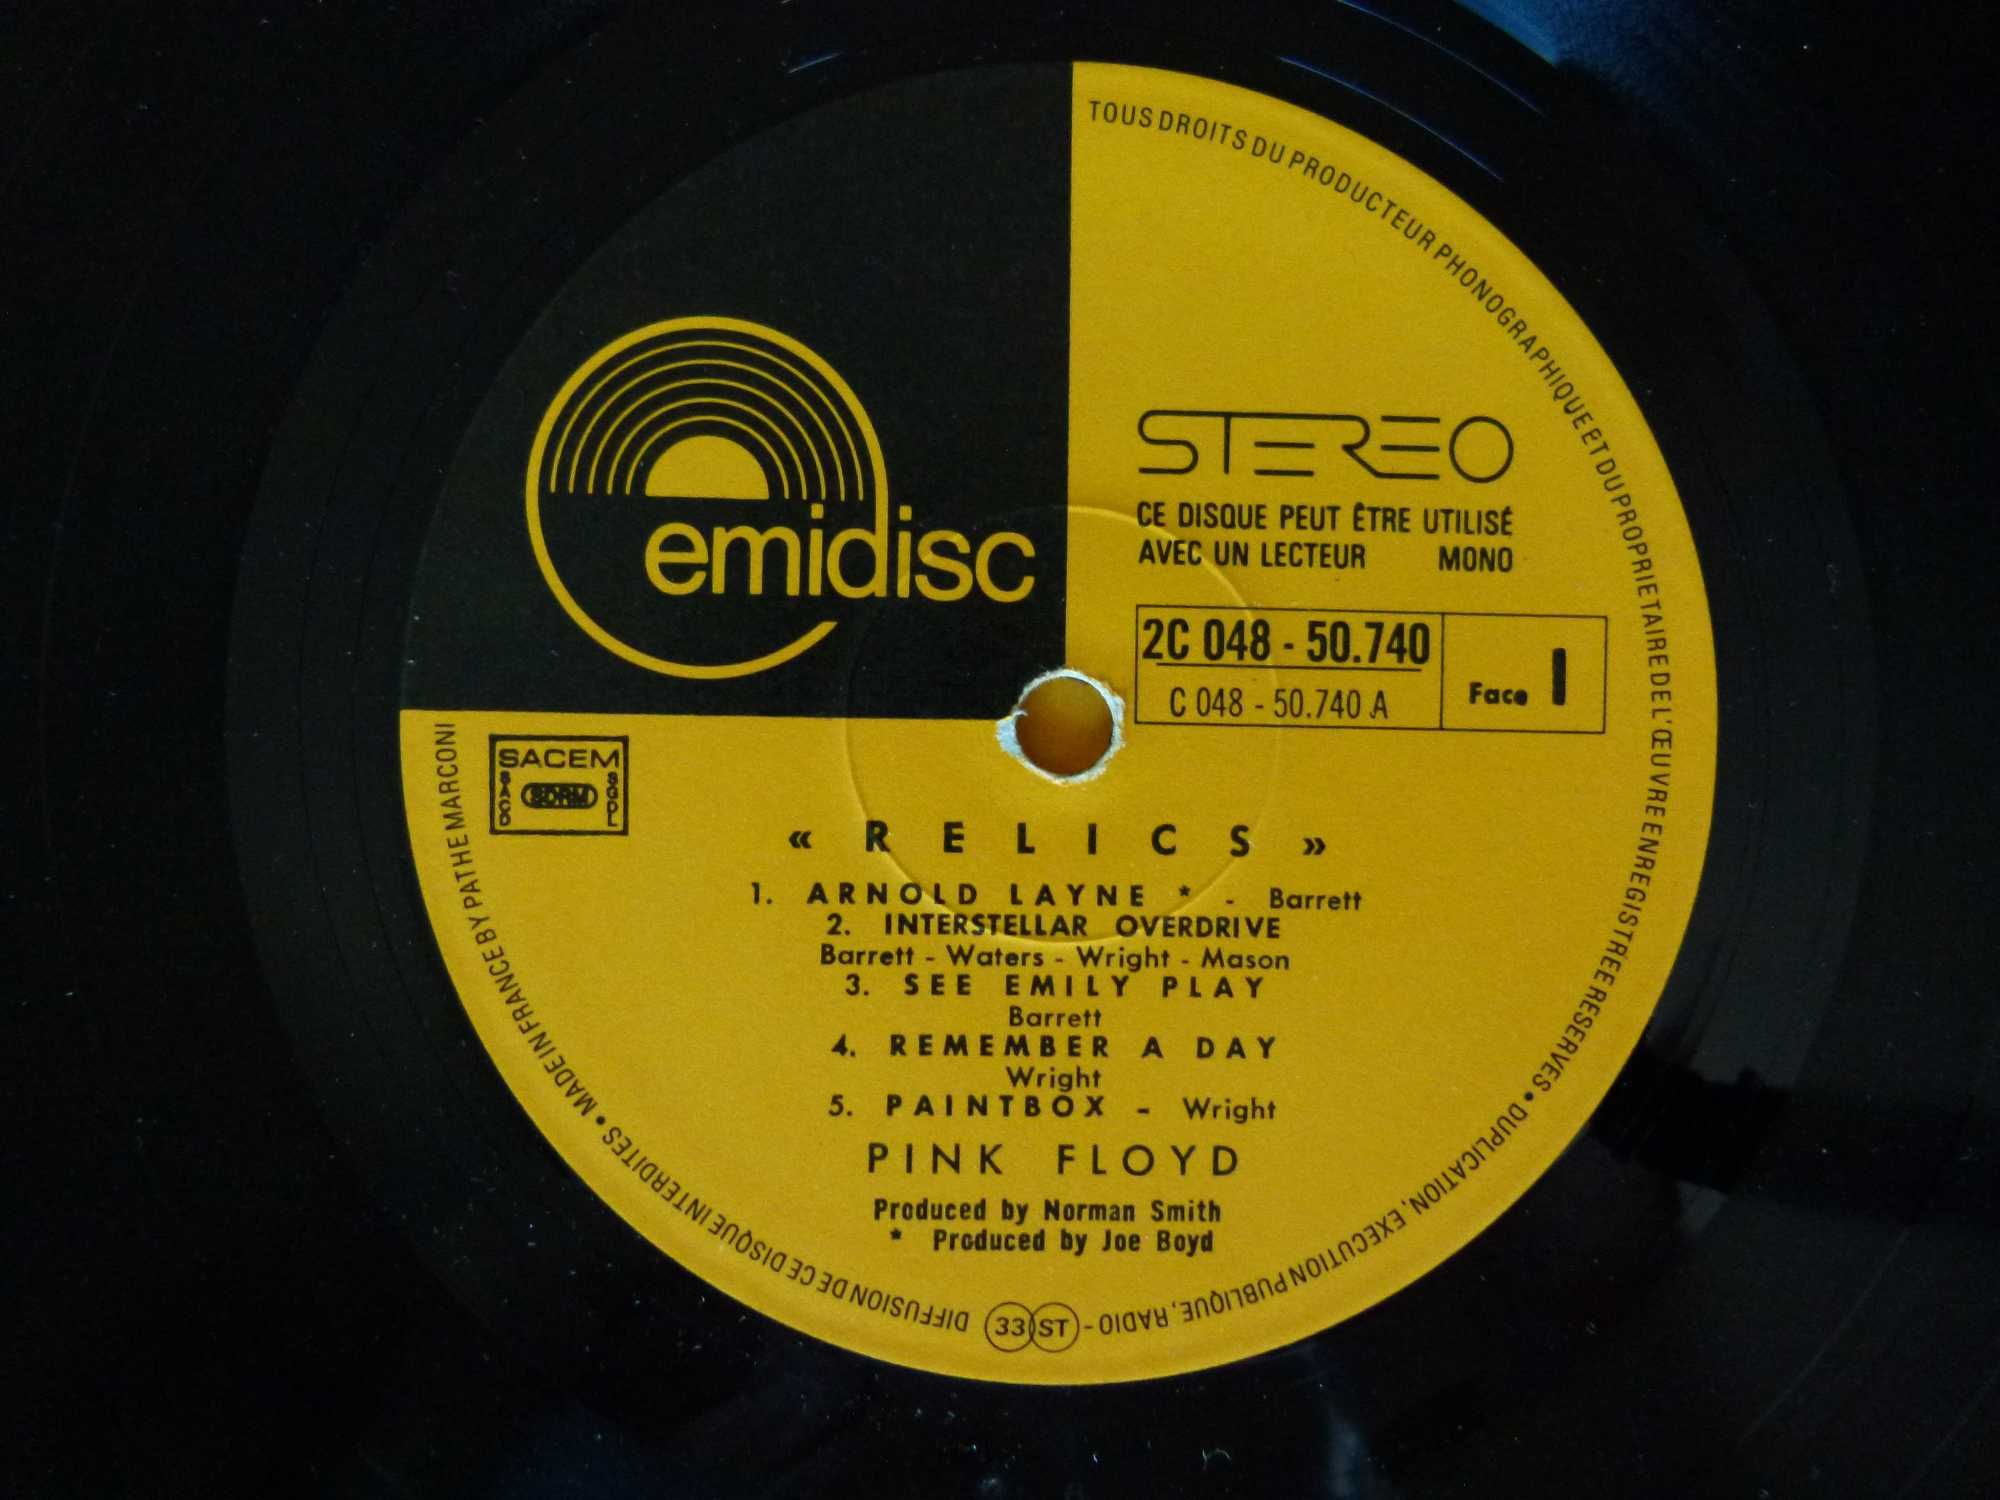 Pink Floyd "Relics" LP Vinil Ed. França (1971)